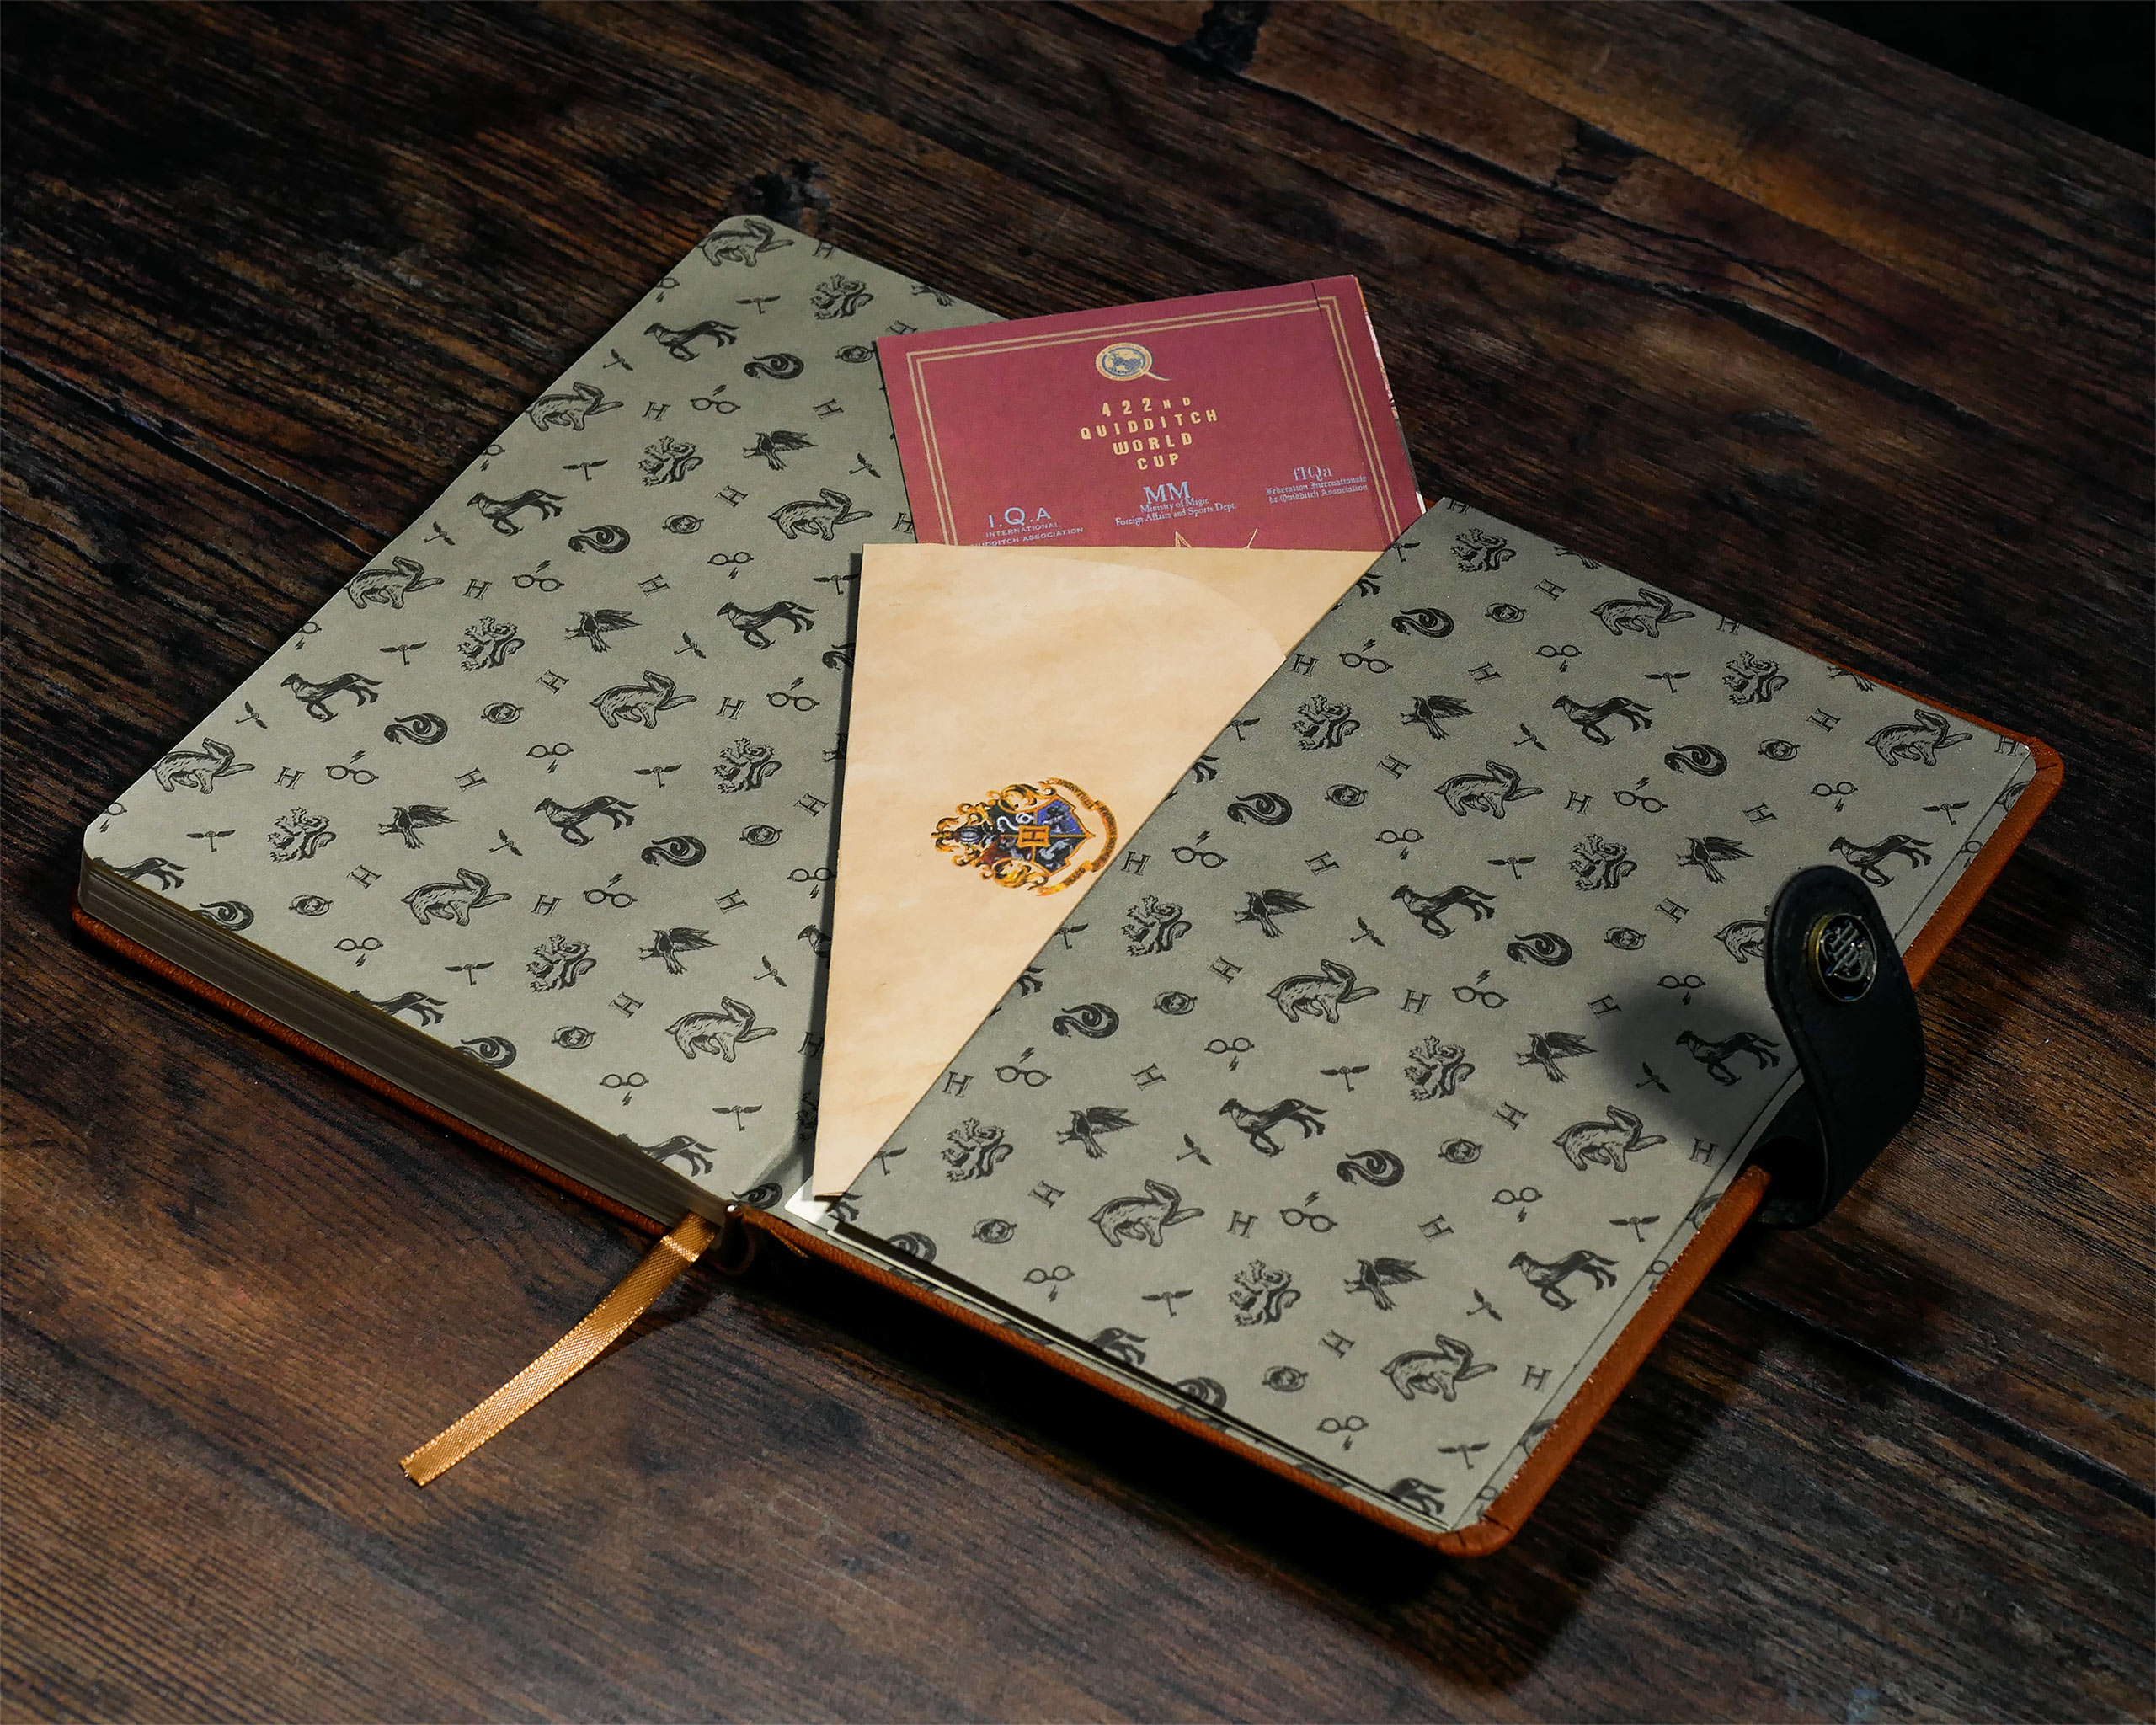 Harry Potter Notizbuch und Zauberstab Stift